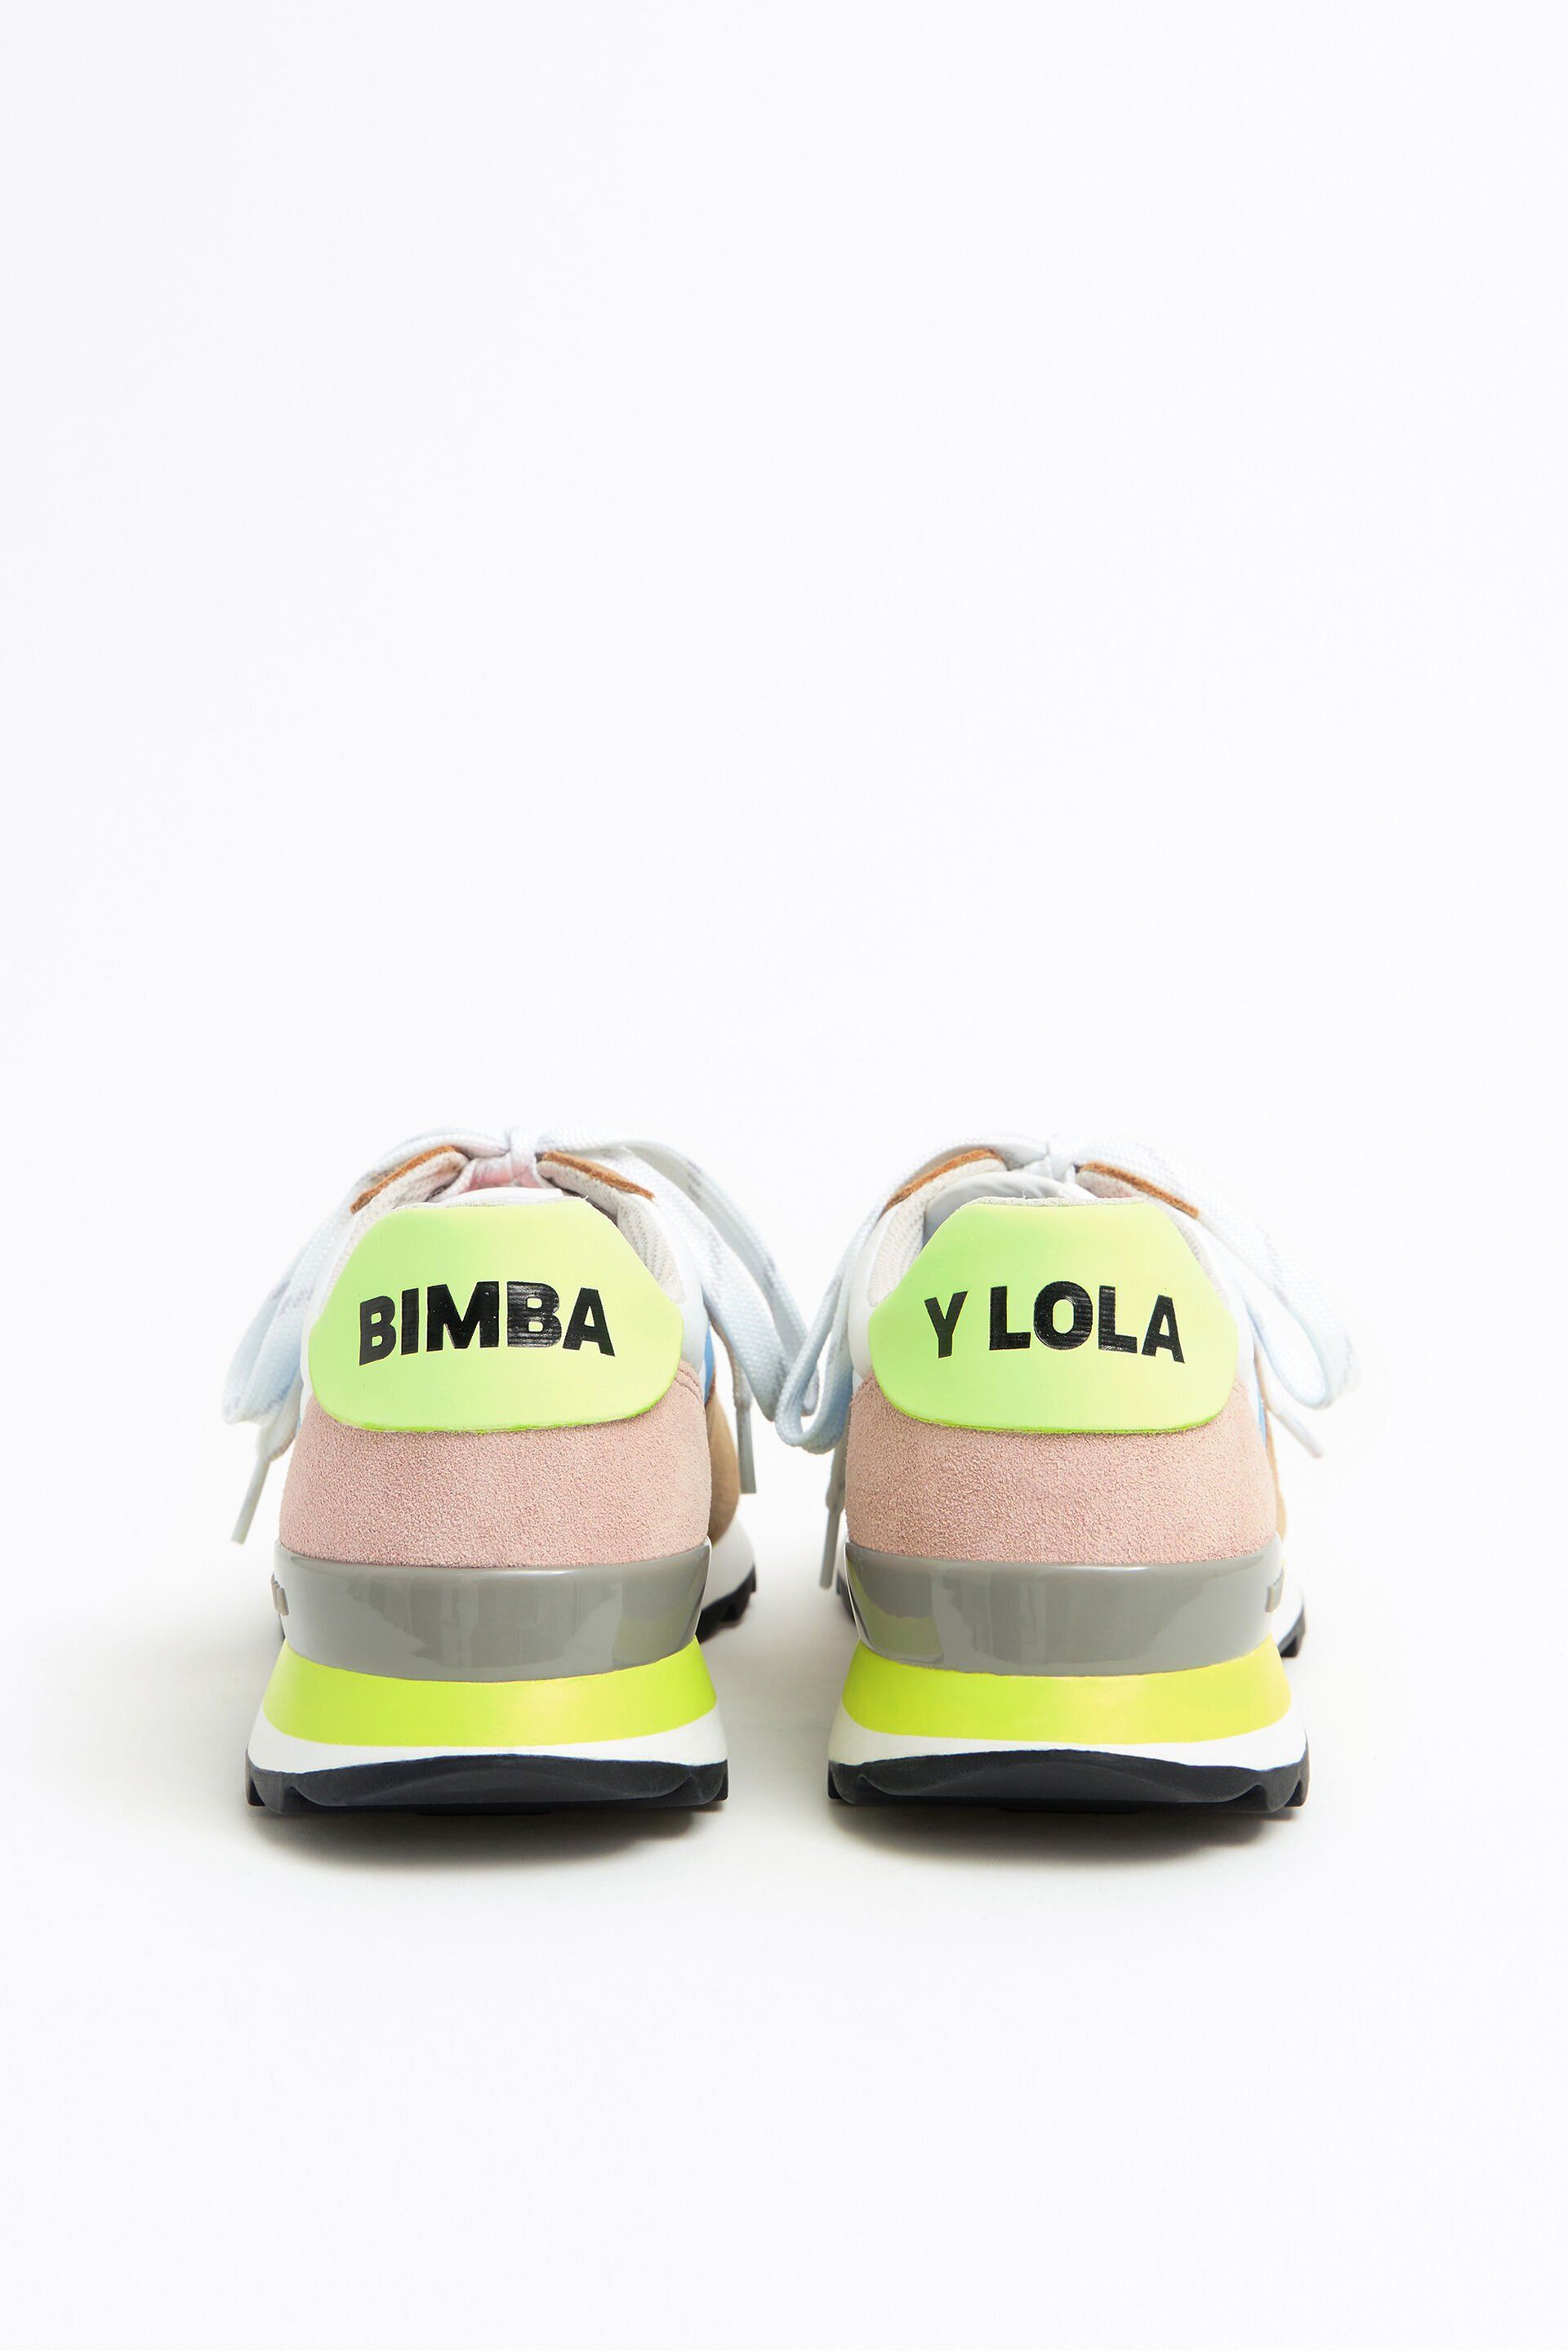 Bimba y Lola rebaja estas zapatillas a un precio imbatible